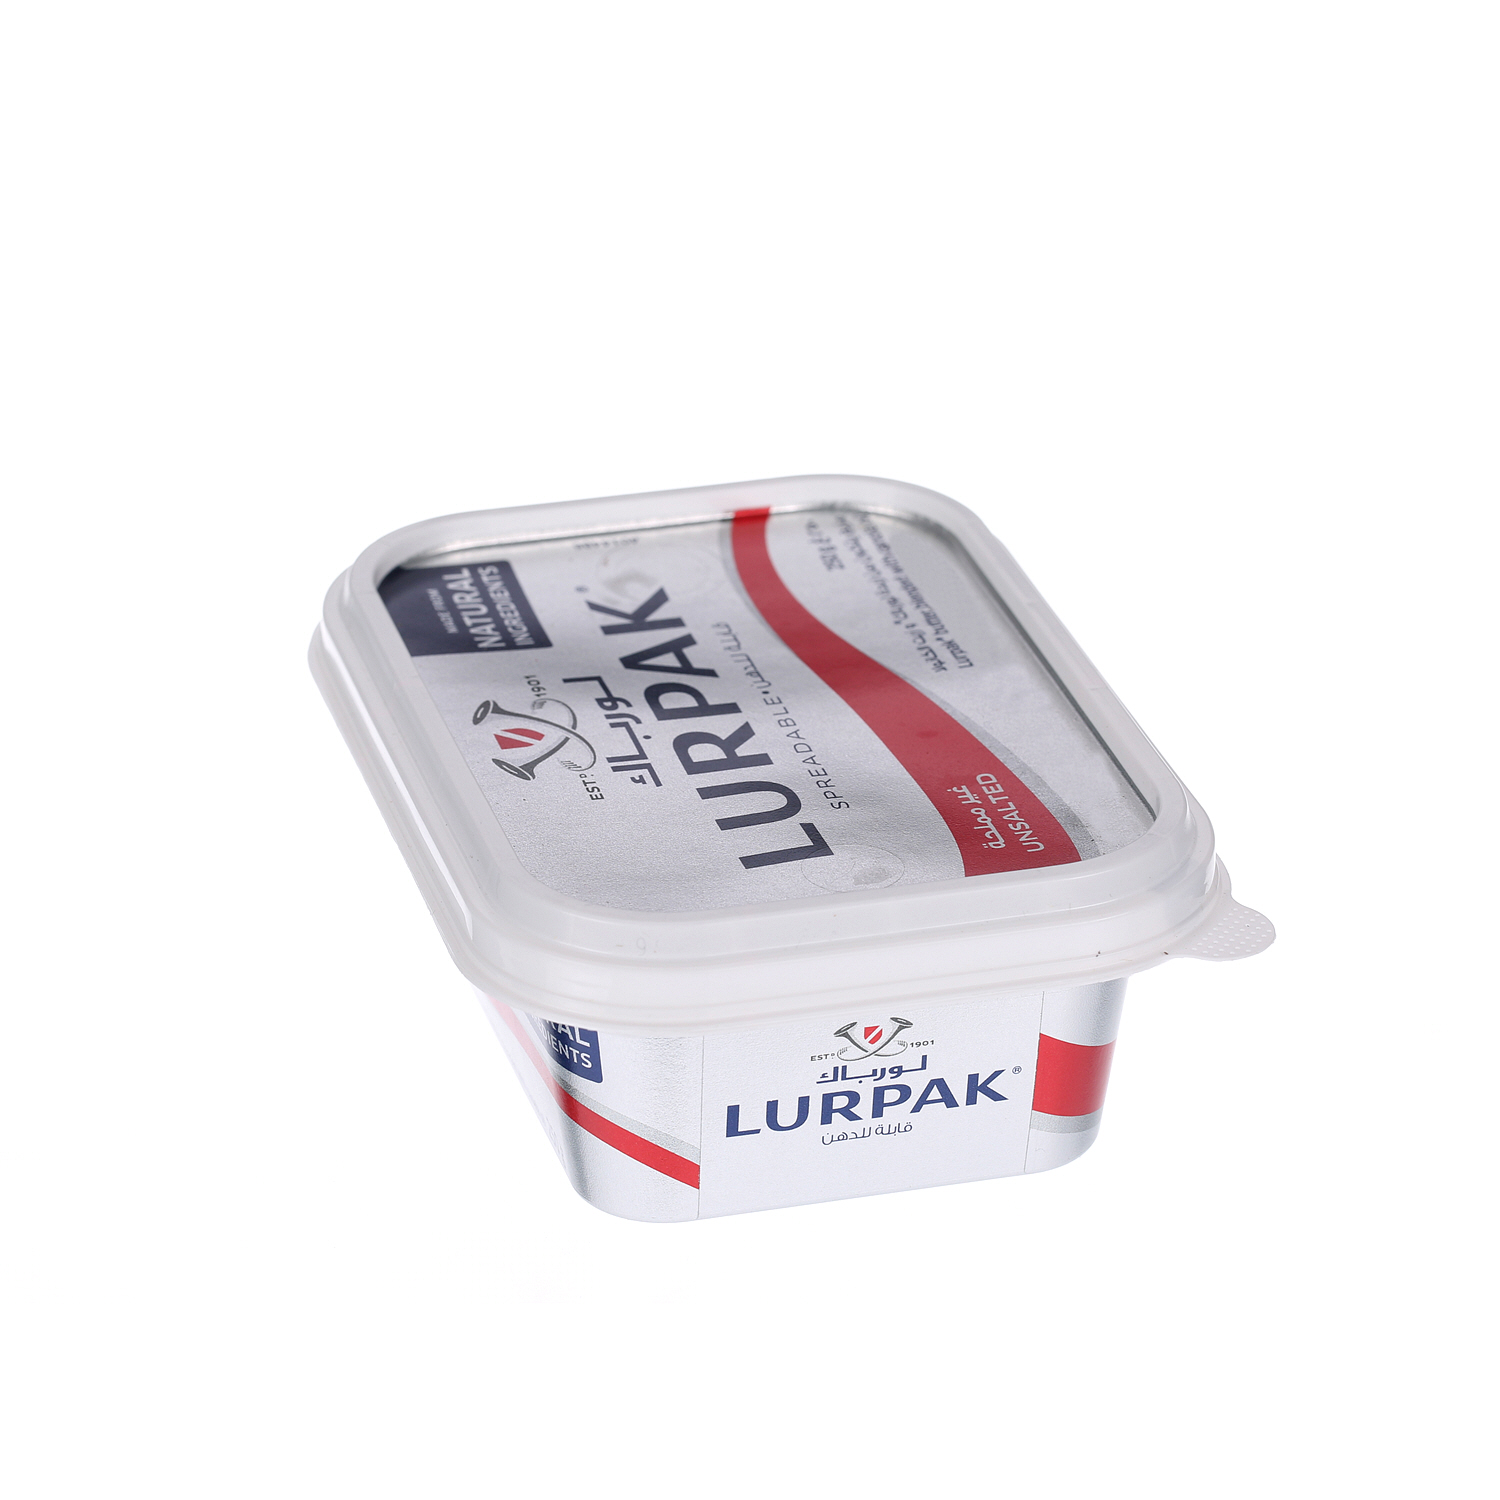 Lurpak Butter Spreadable Unsalted 250 g